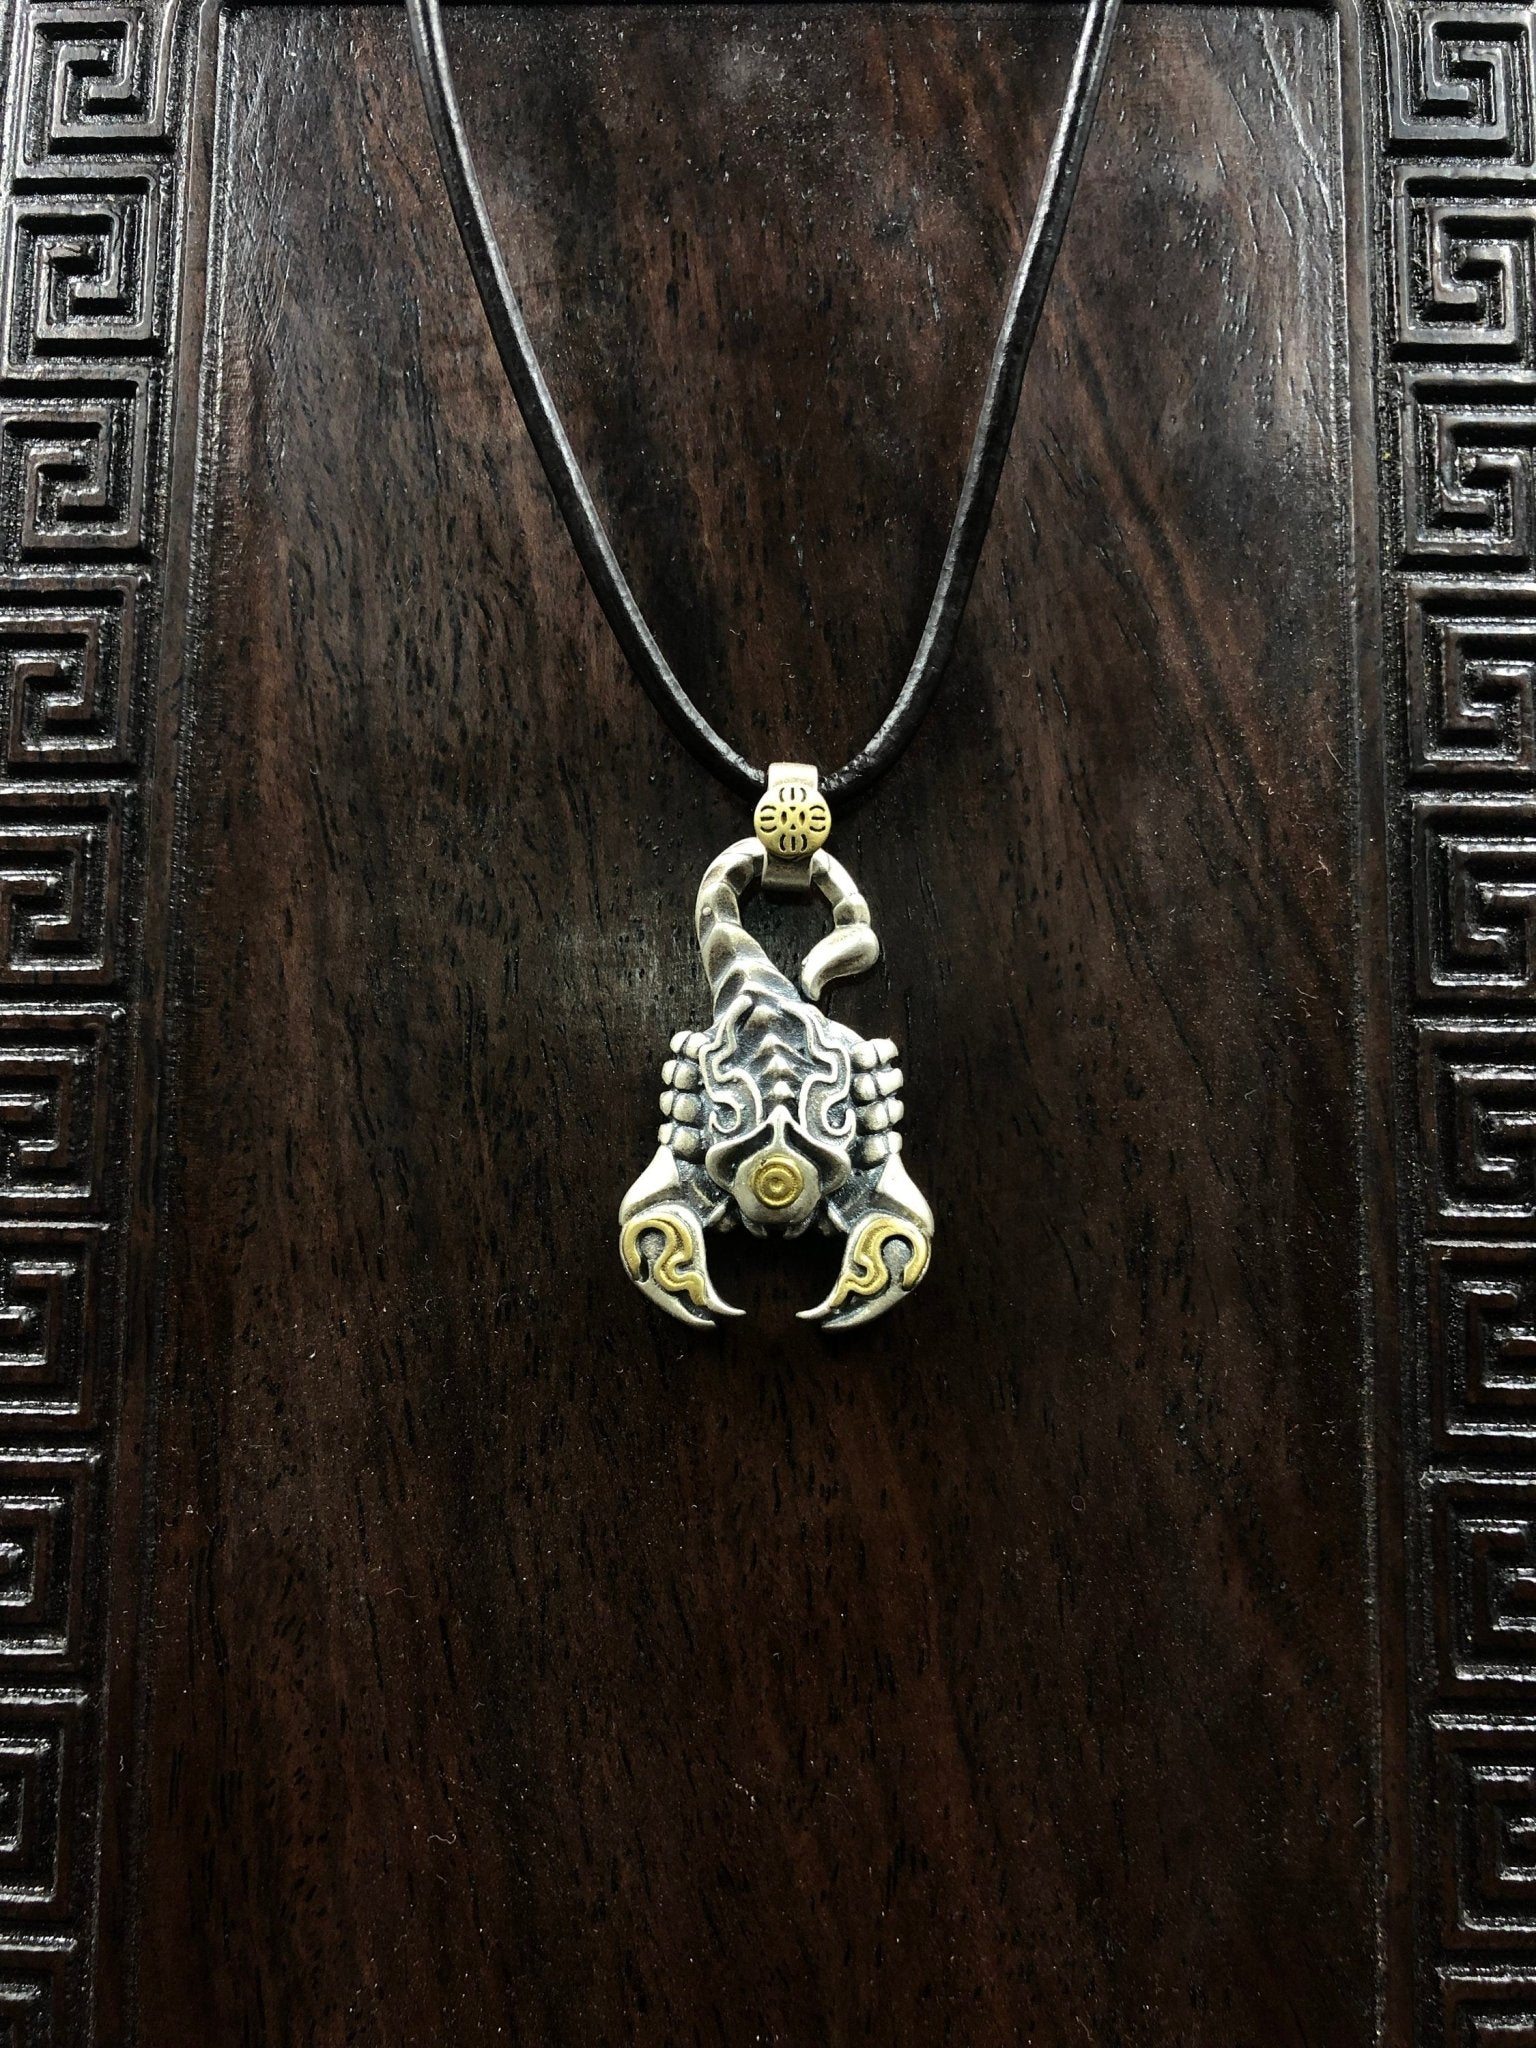 pendentif tibétain, amulette de protection bouddhiste scorpion de padmasambhava (Guru Rinpoché) argent 925 et cuivre, mantra sur le ventre - obsidian dragon